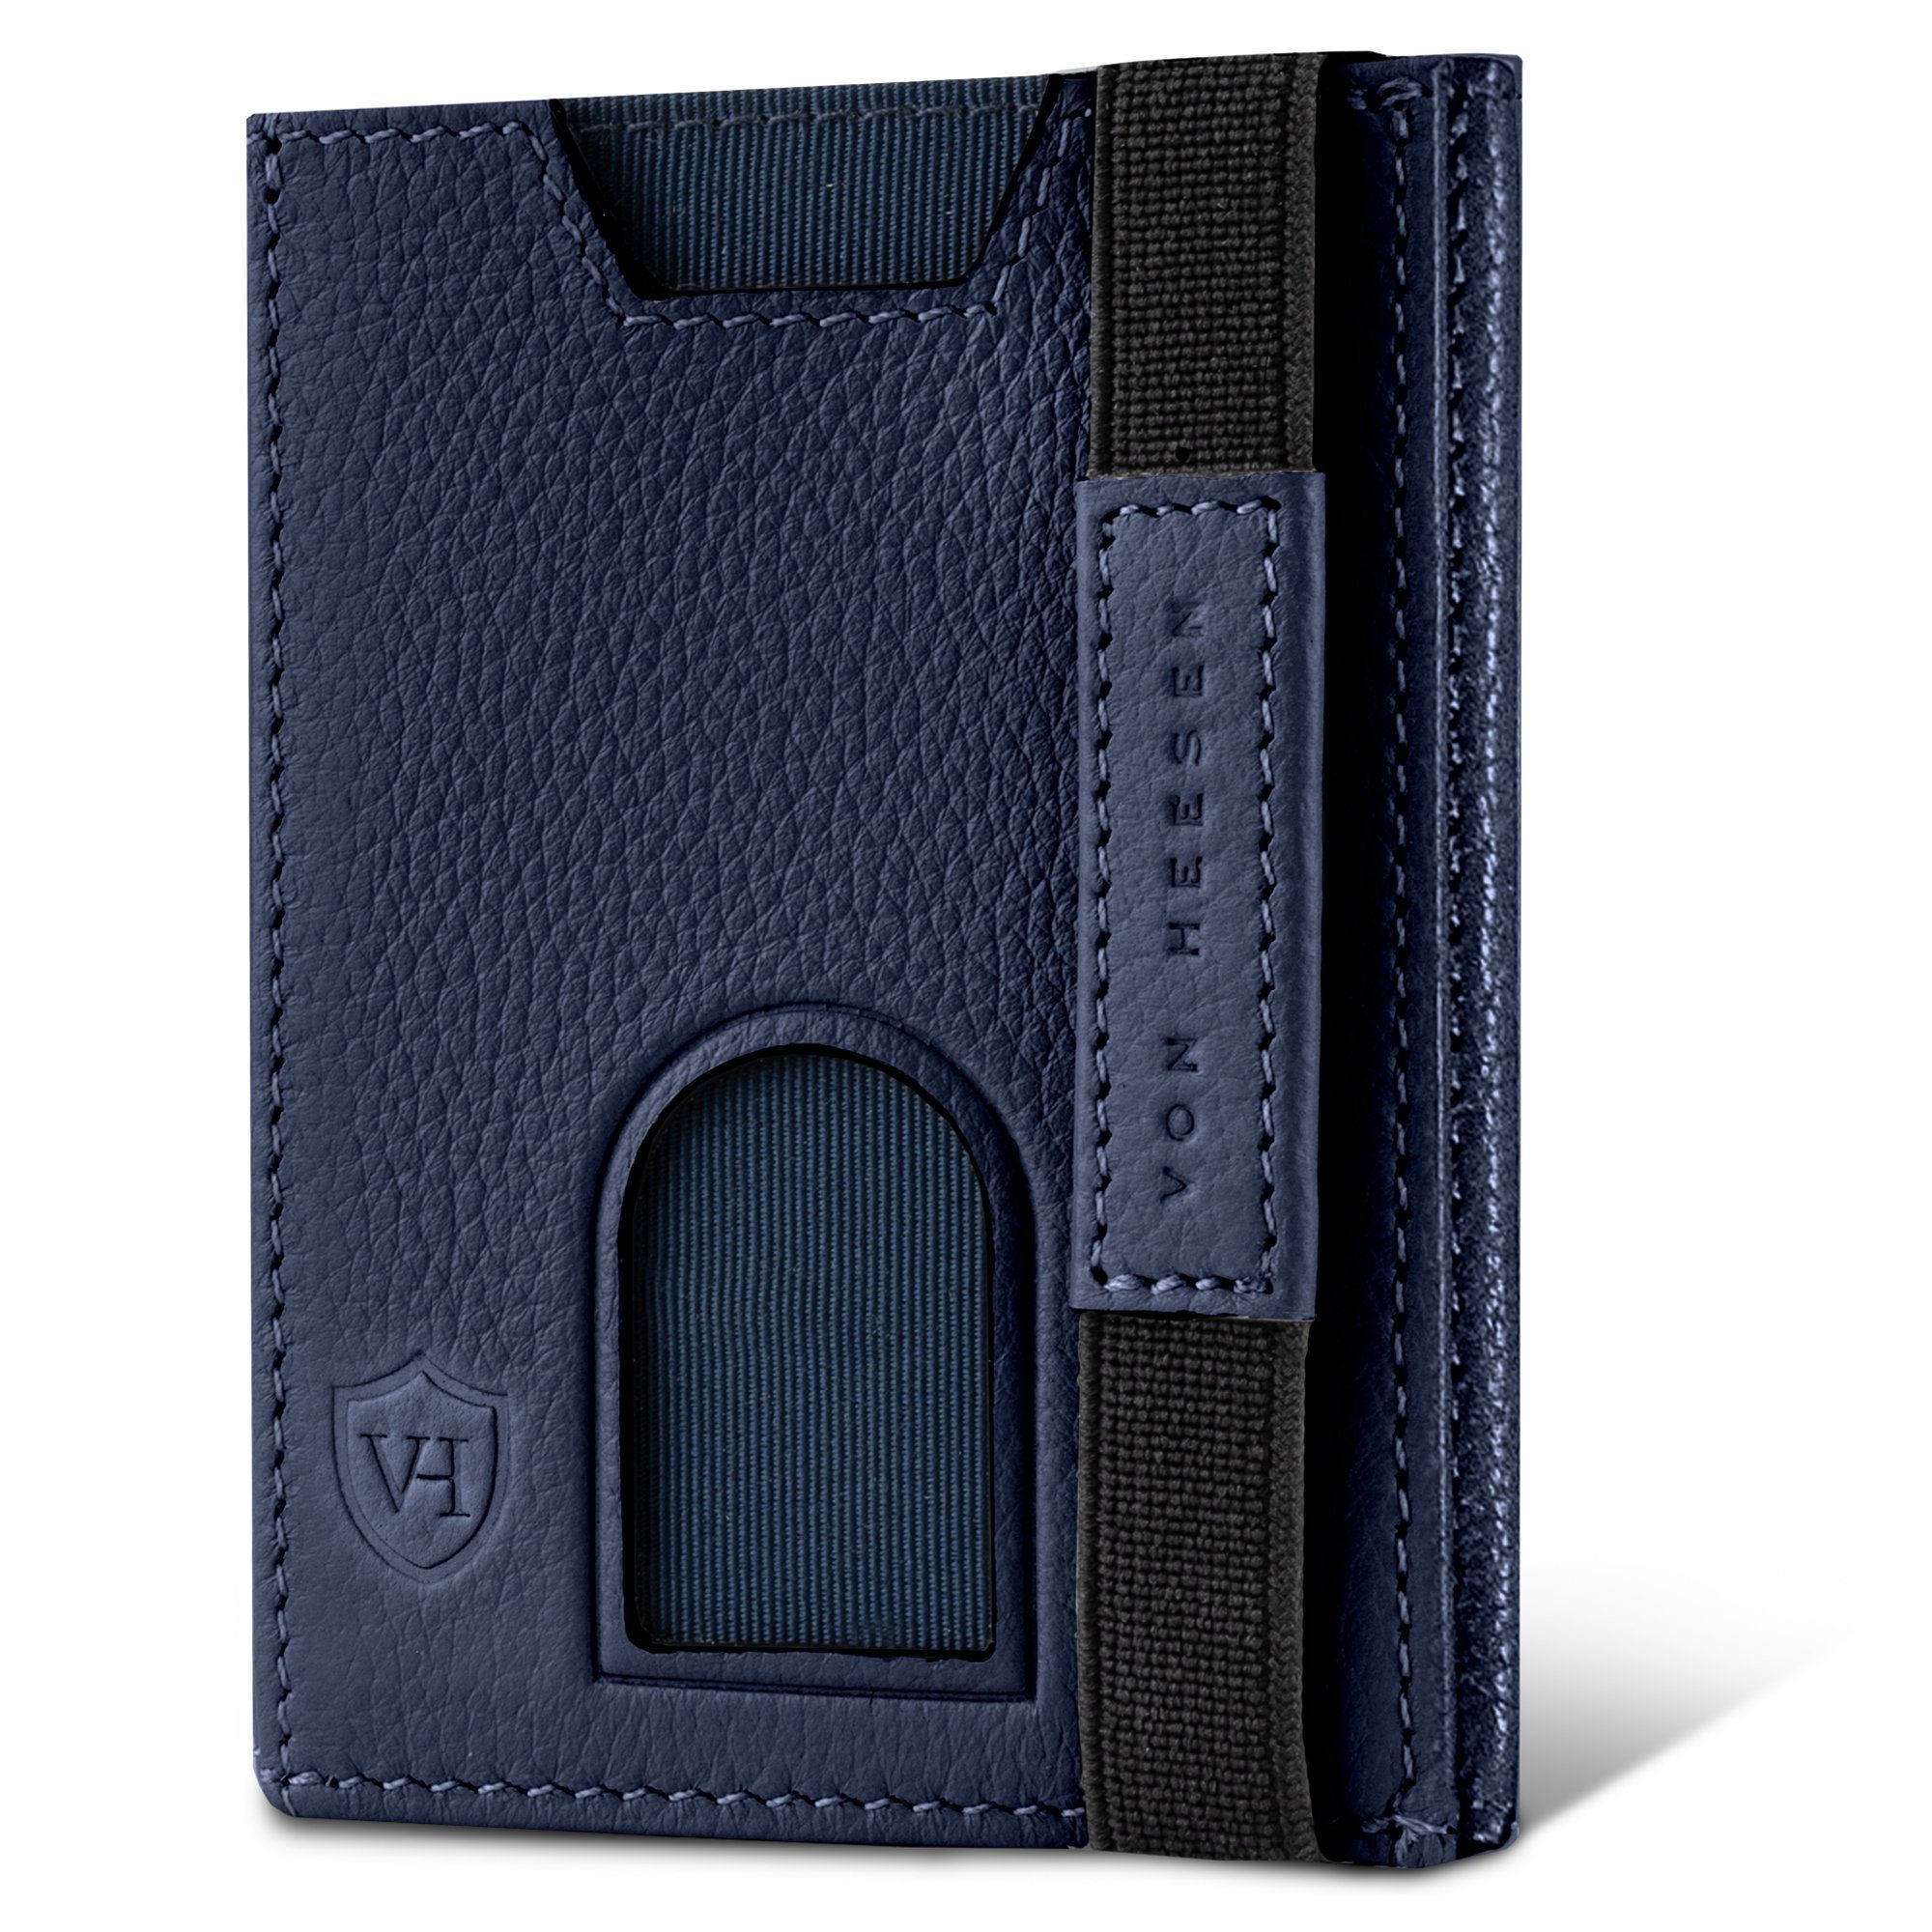 VON HEESEN Geldbörse Whizz Wallet mit 6 Kartenfächer, Slim Wallet Geldbeutel Portemonnaie inkl. RFID-Schutz & Geschenkbox Blau | Geldbörsen